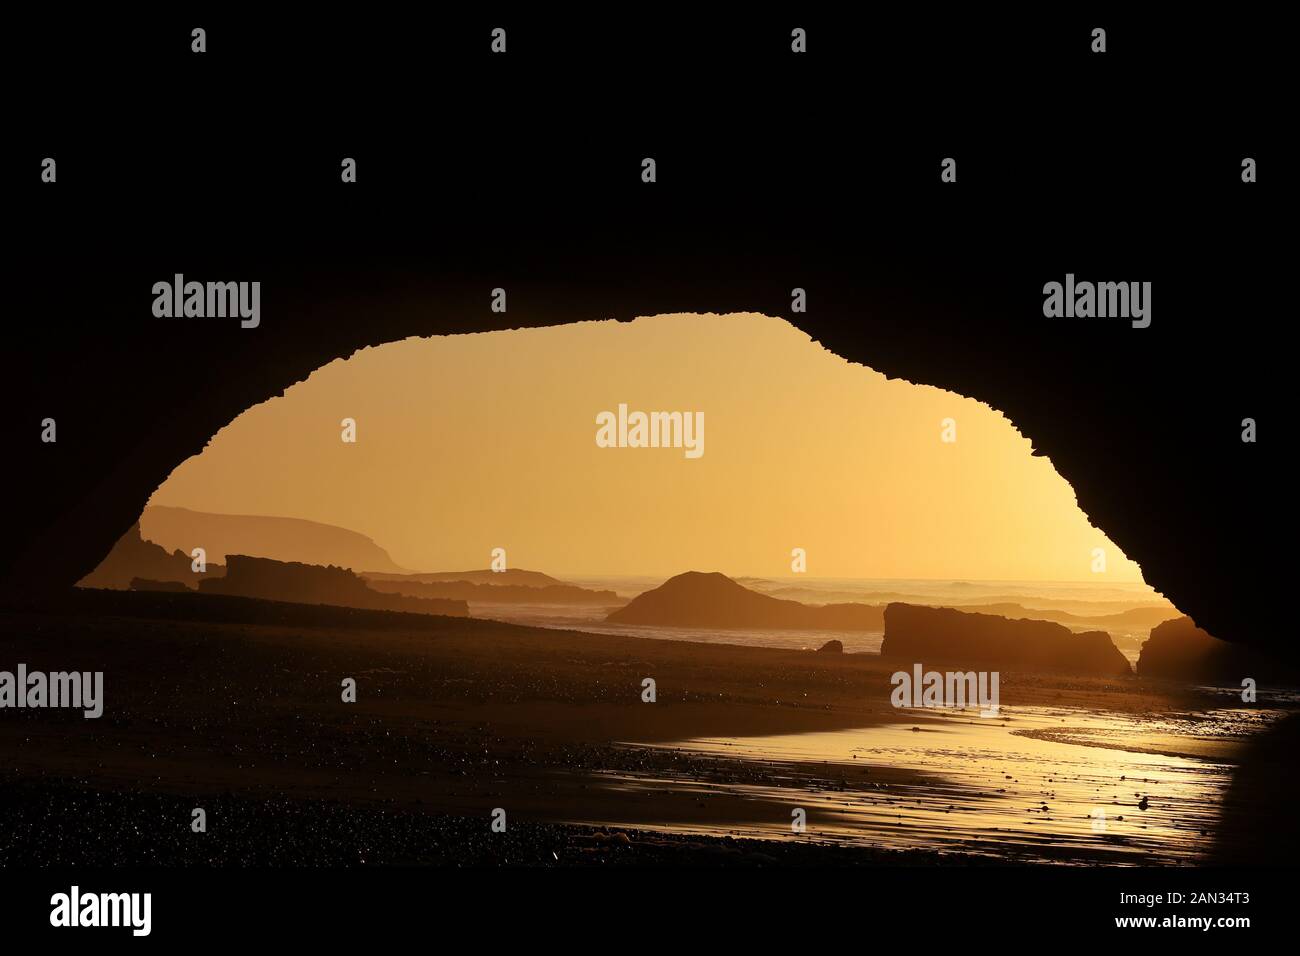 Arche en pierre naturelle au soleil de la plage de legzira au coucher du soleil avec de belles couleurs orange, Sidi Ifni, Maroc Banque D'Images